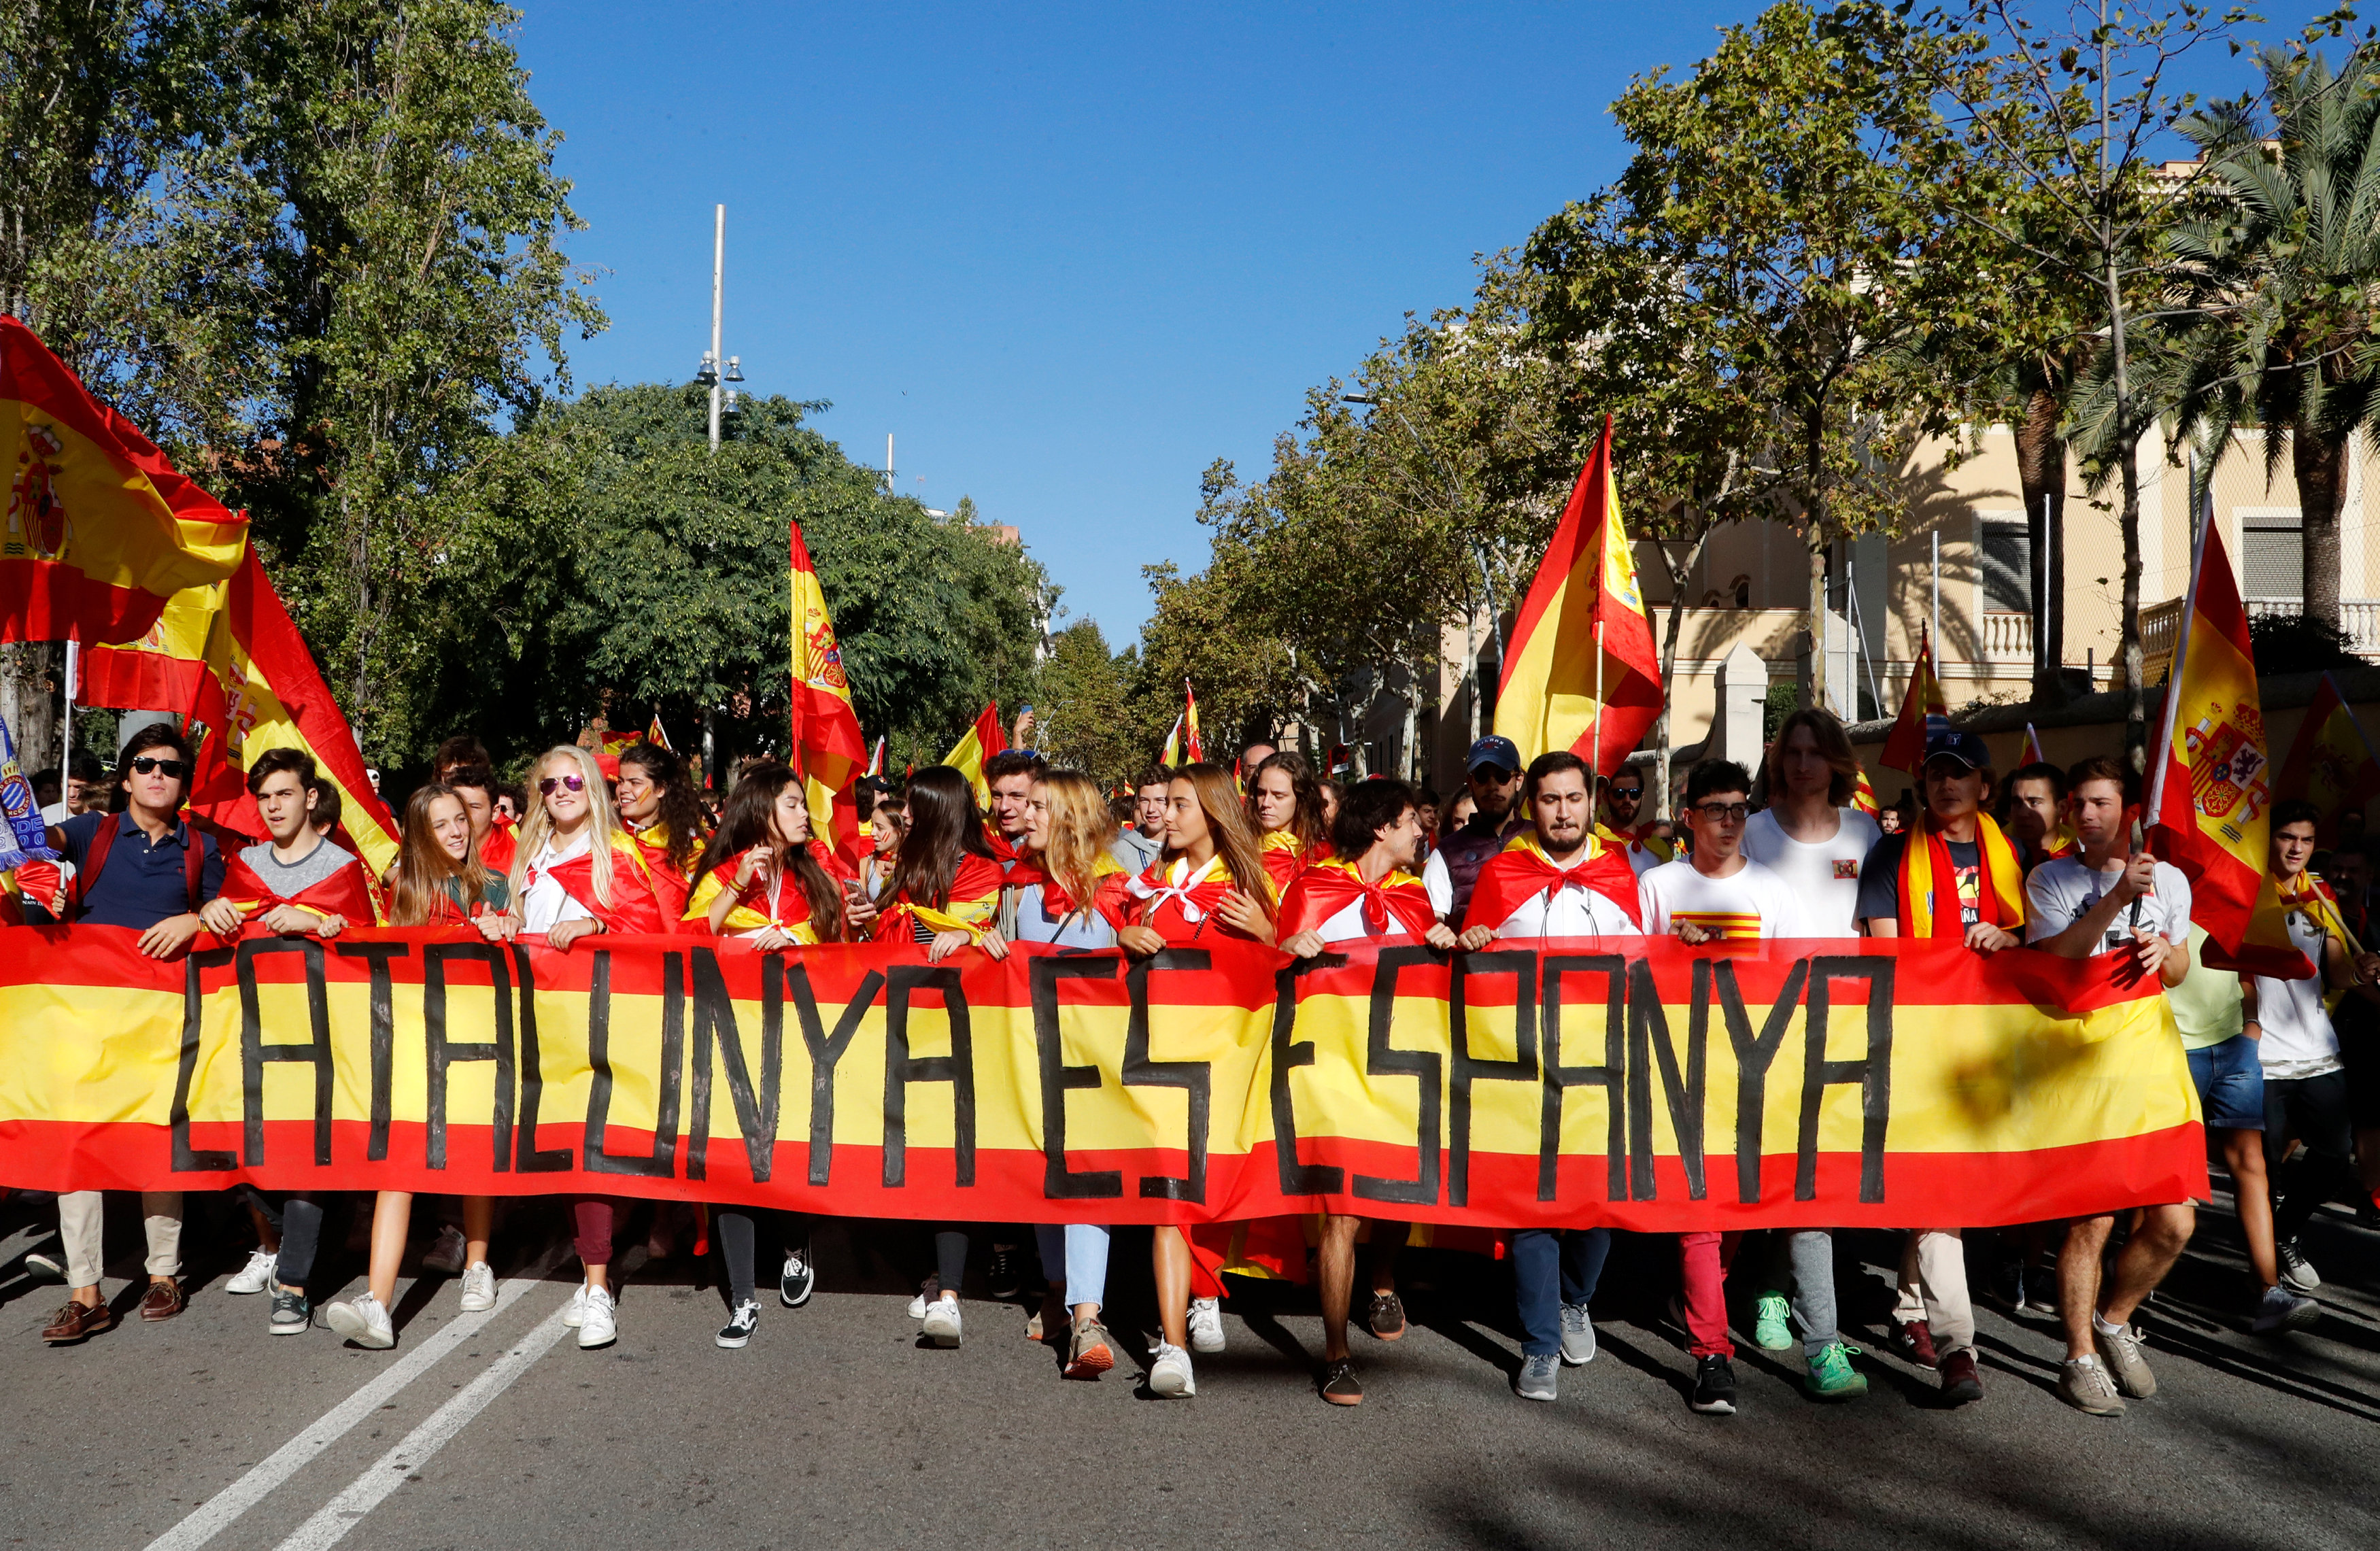 جميلات إسبانيا يتصدرون صفوف المظاهرة